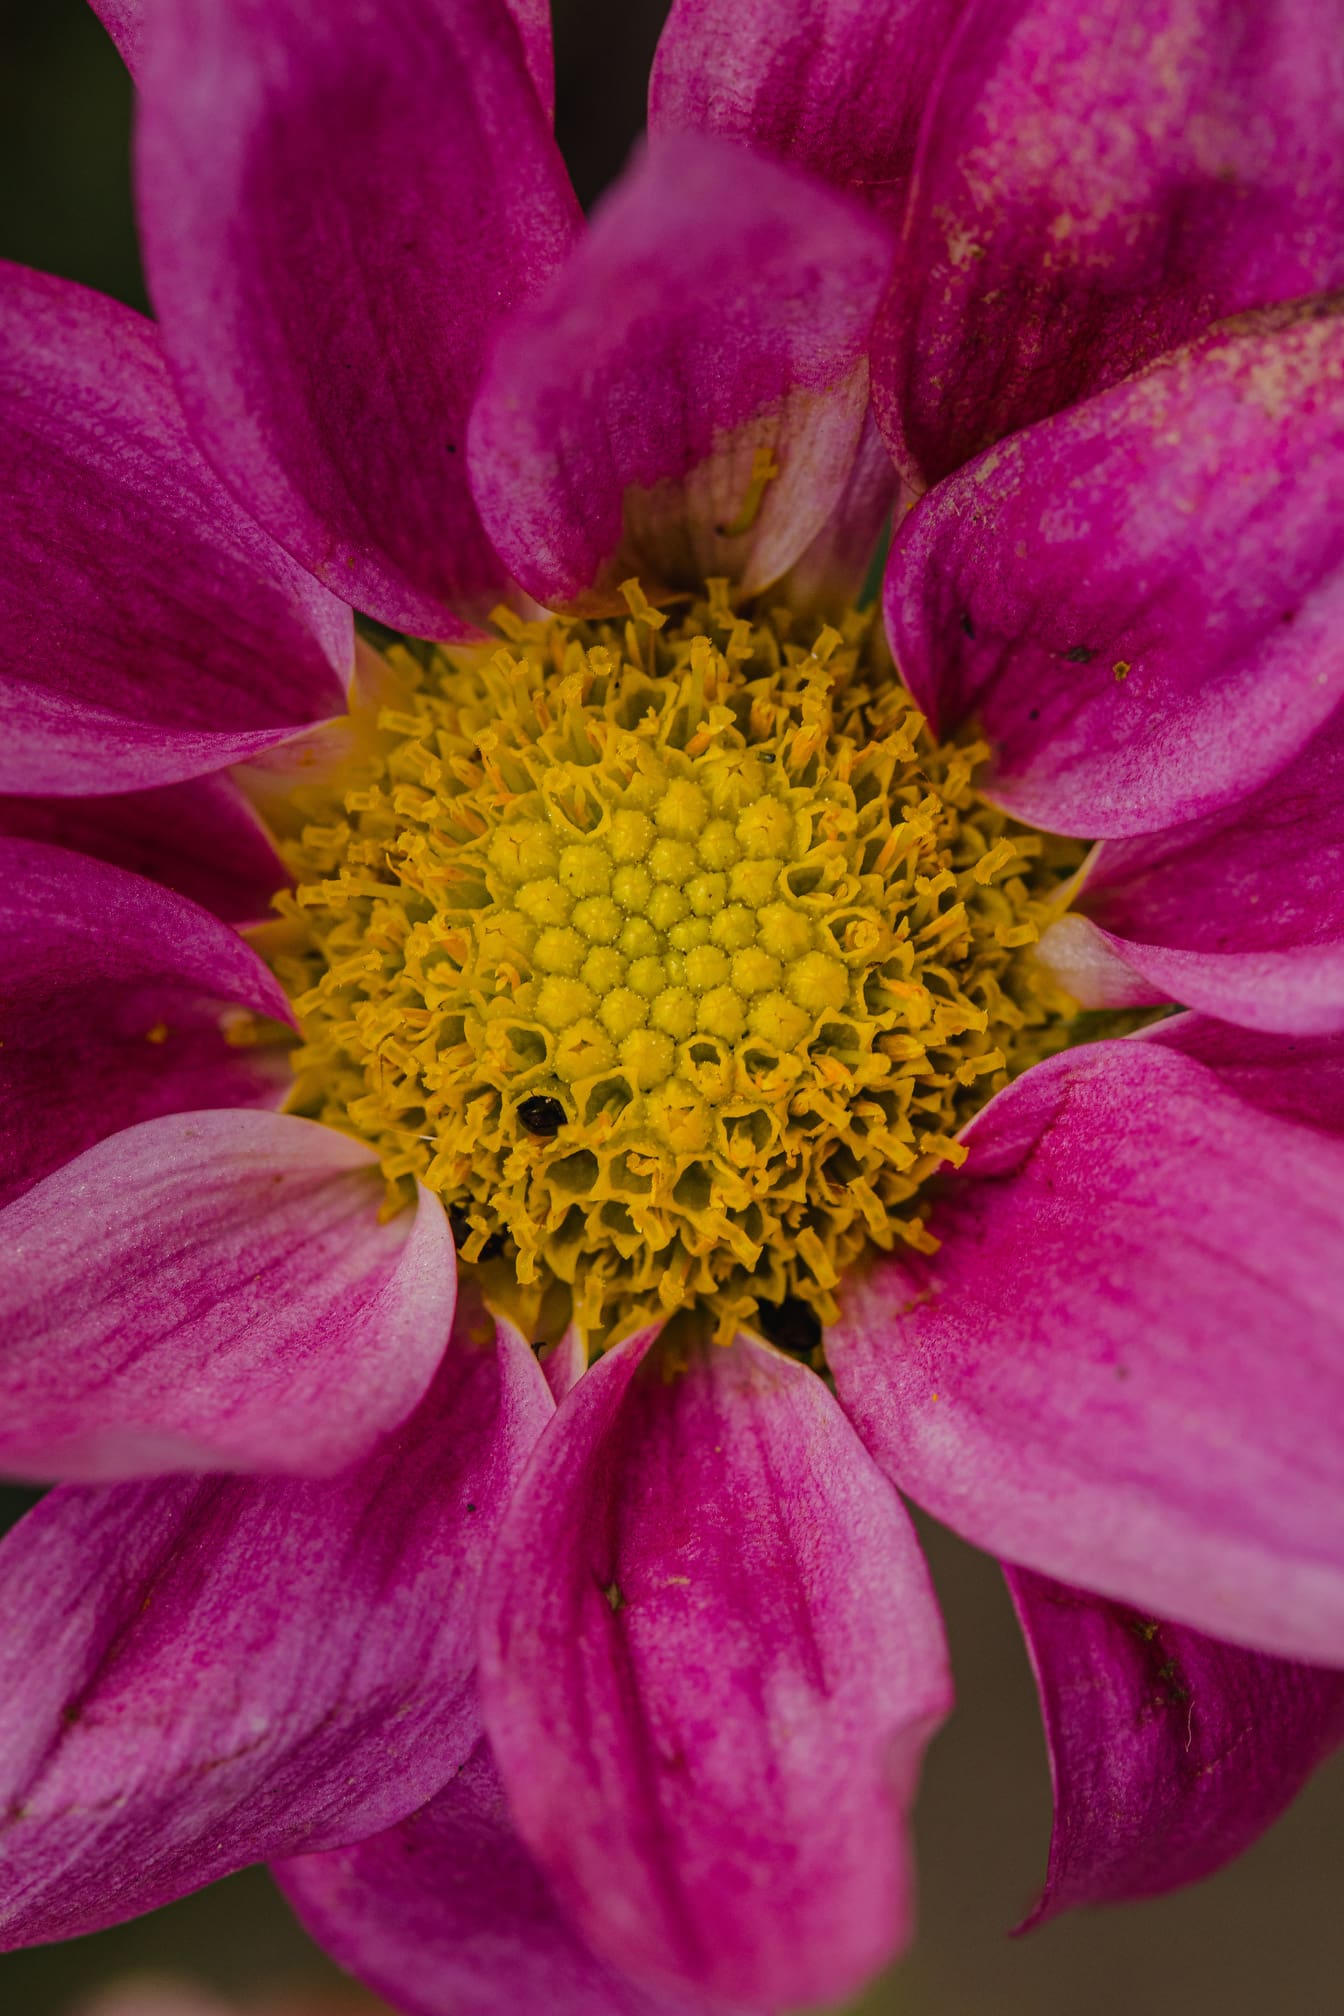 Pembemsi çiçek üzerinde bir polenin makro fotoğrafı